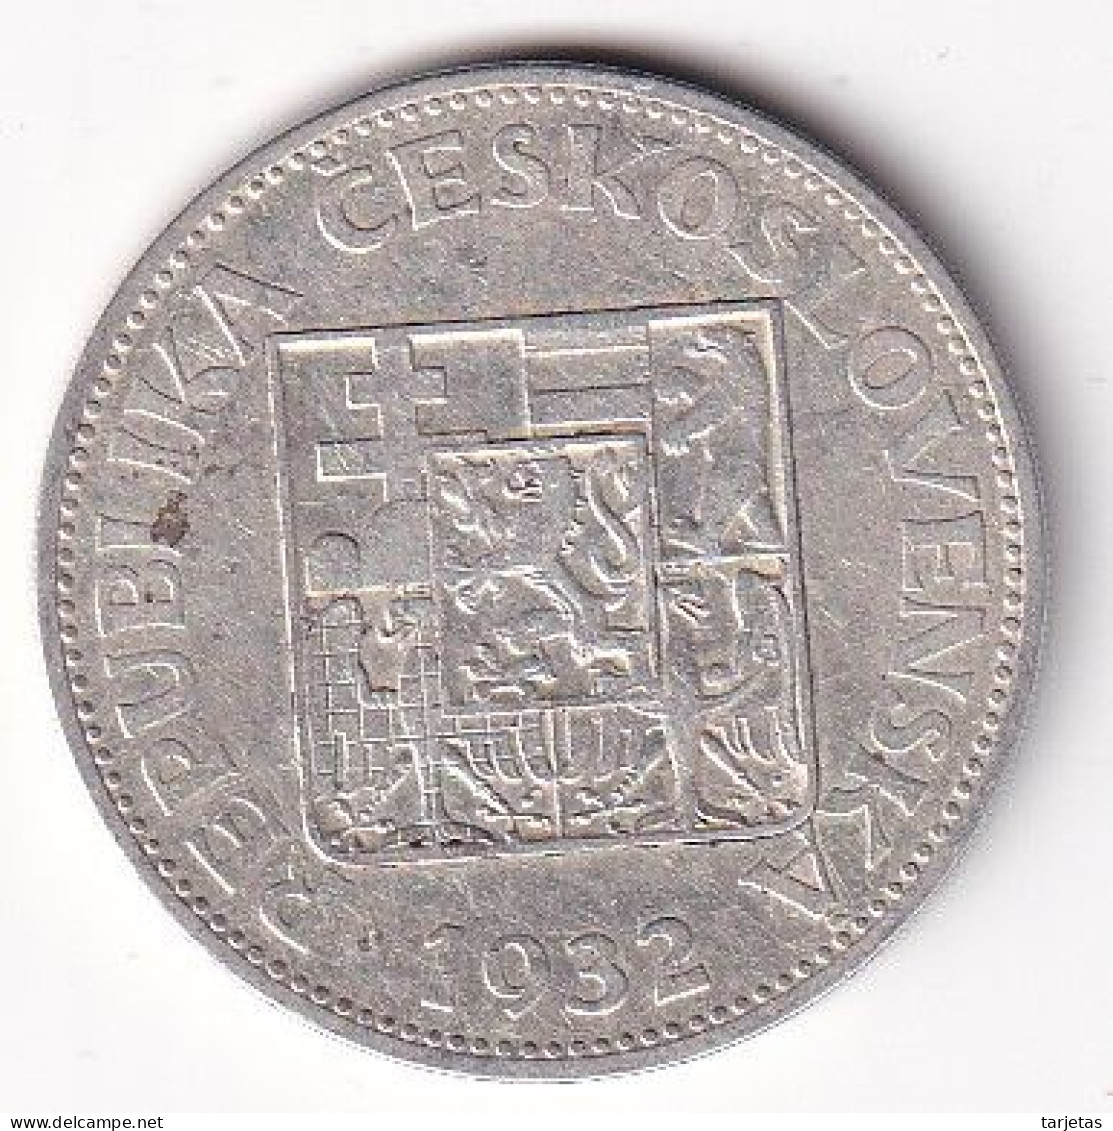 MONEDA DE PLATA DE CHECOSLOVAQUIA DE 10 KORUN DEL AÑO 1932 (COIN) SILVER-ARGENT - Czechoslovakia